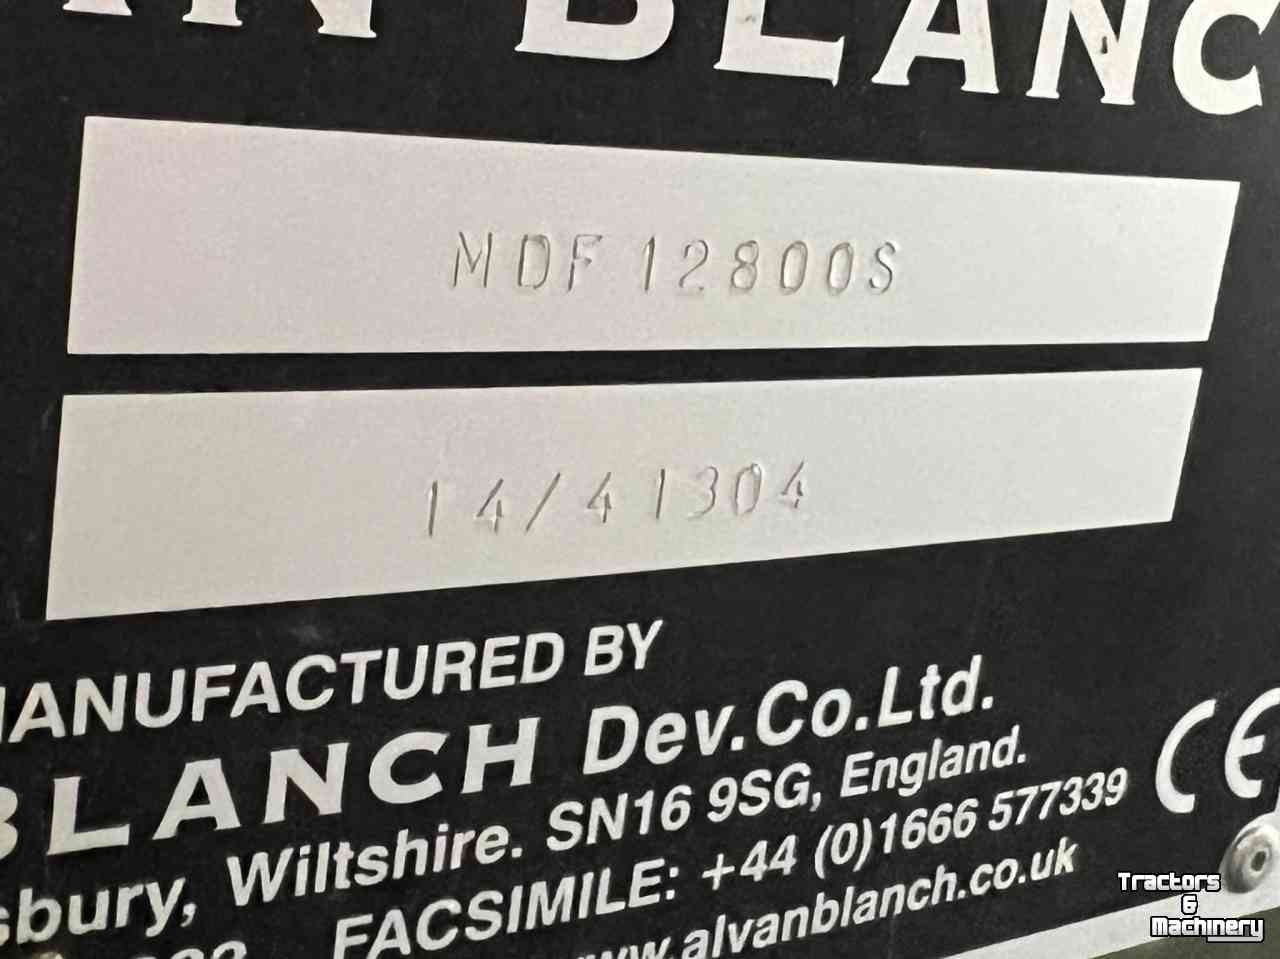 Sonstiges  Alvan Blanch MDF 12800 S